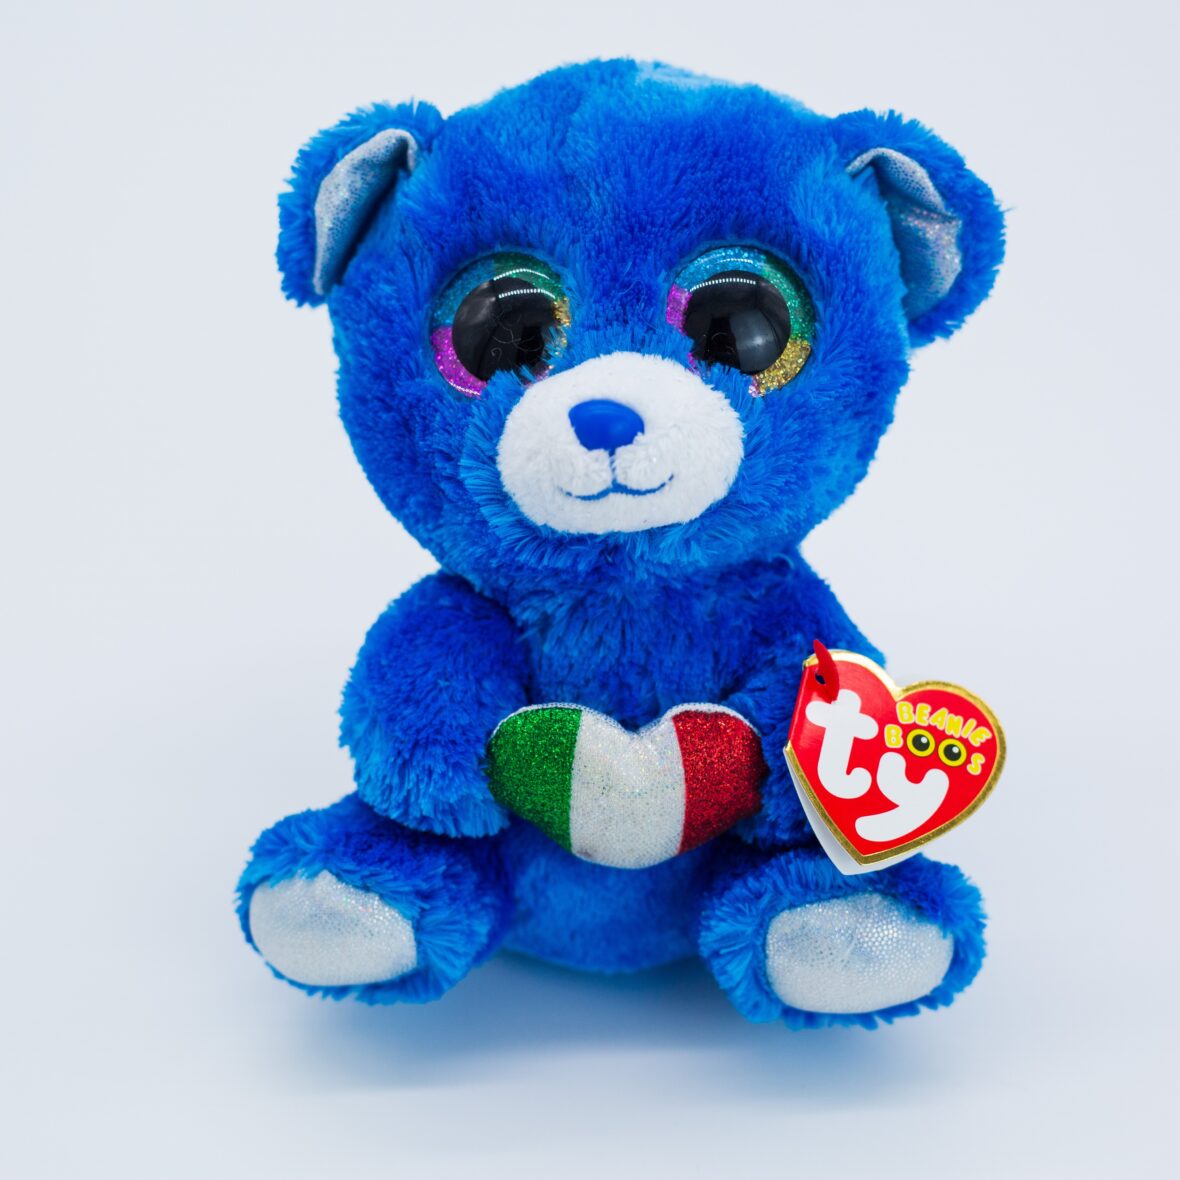 15cm Big Eyes Teddy Bear Soft Stuffed Plush Toy